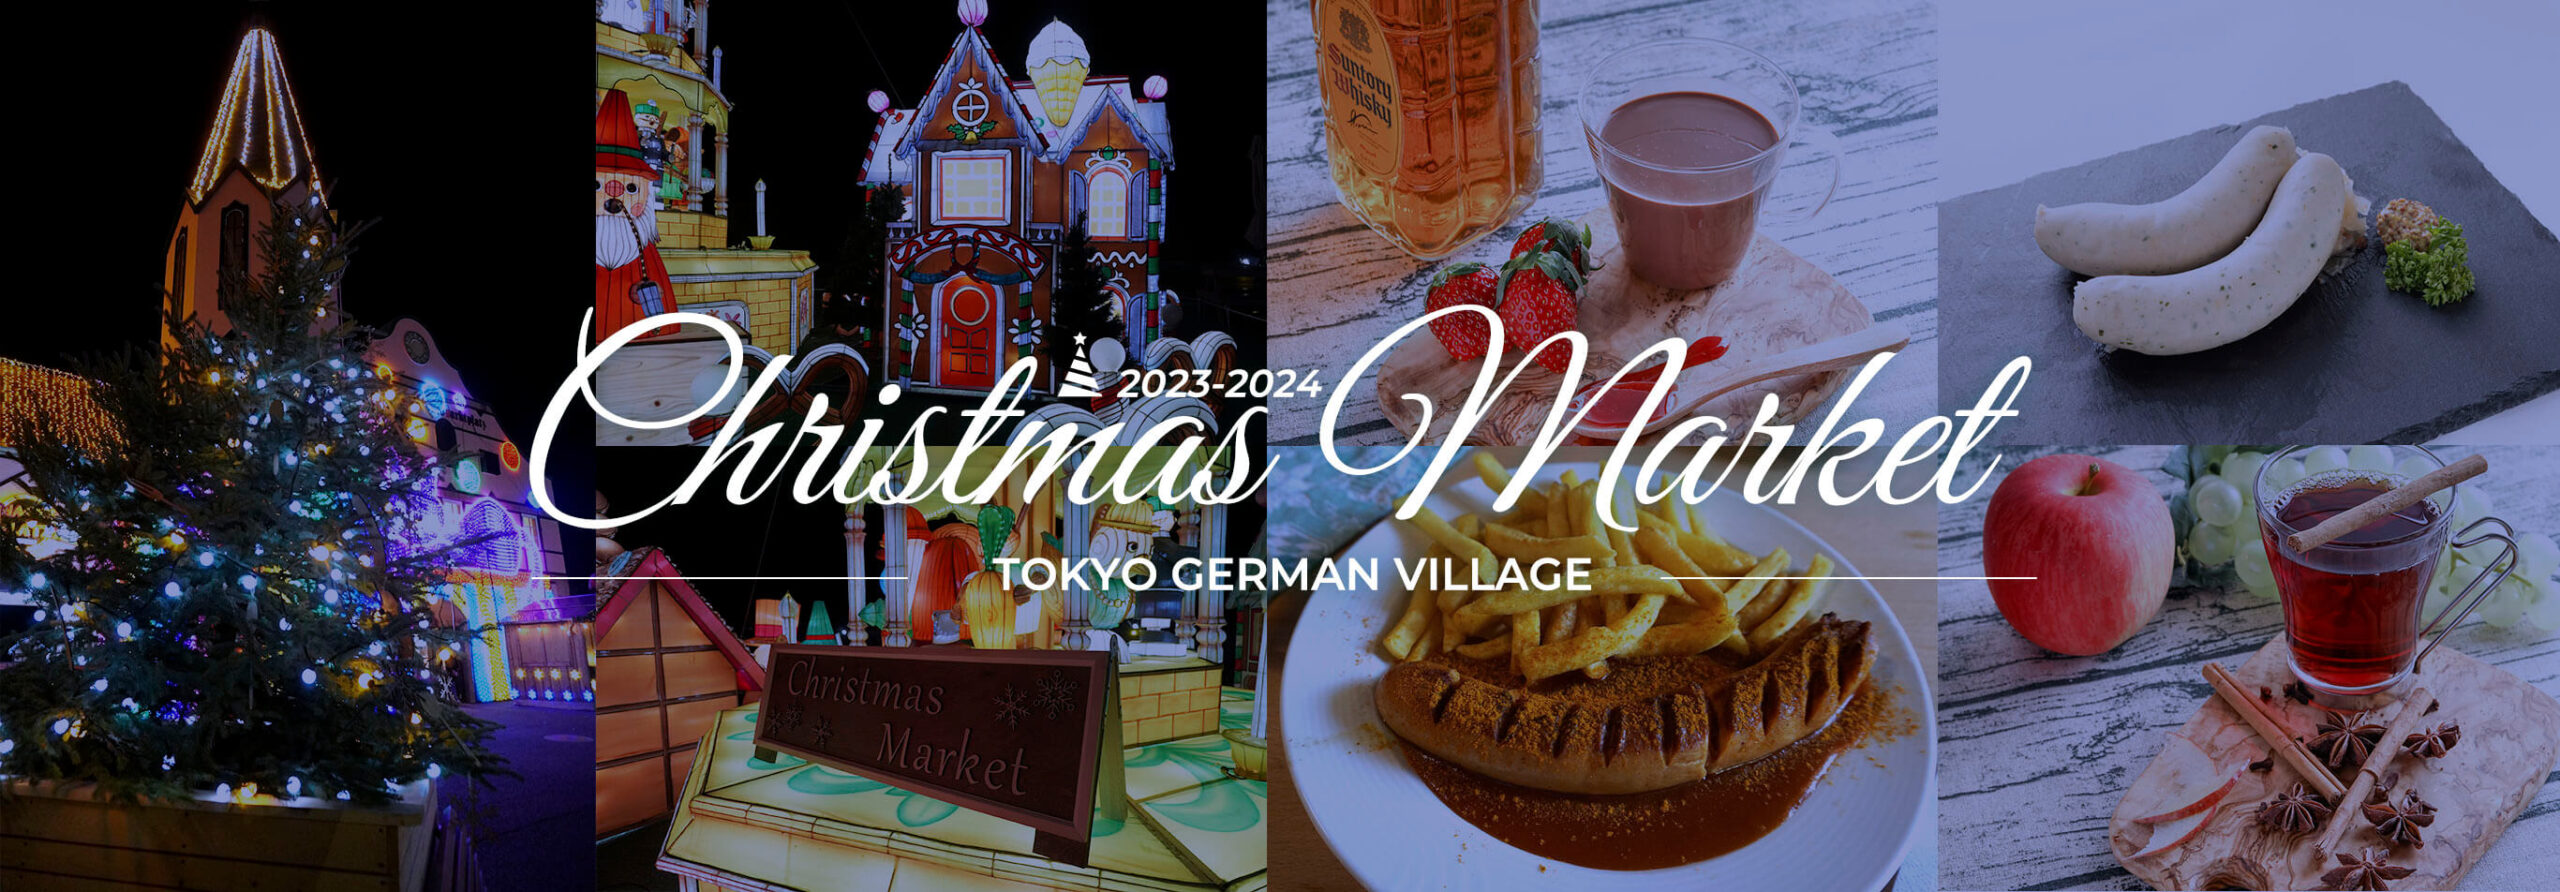 東京ドイツ村クリスマスマーケット2023-2024